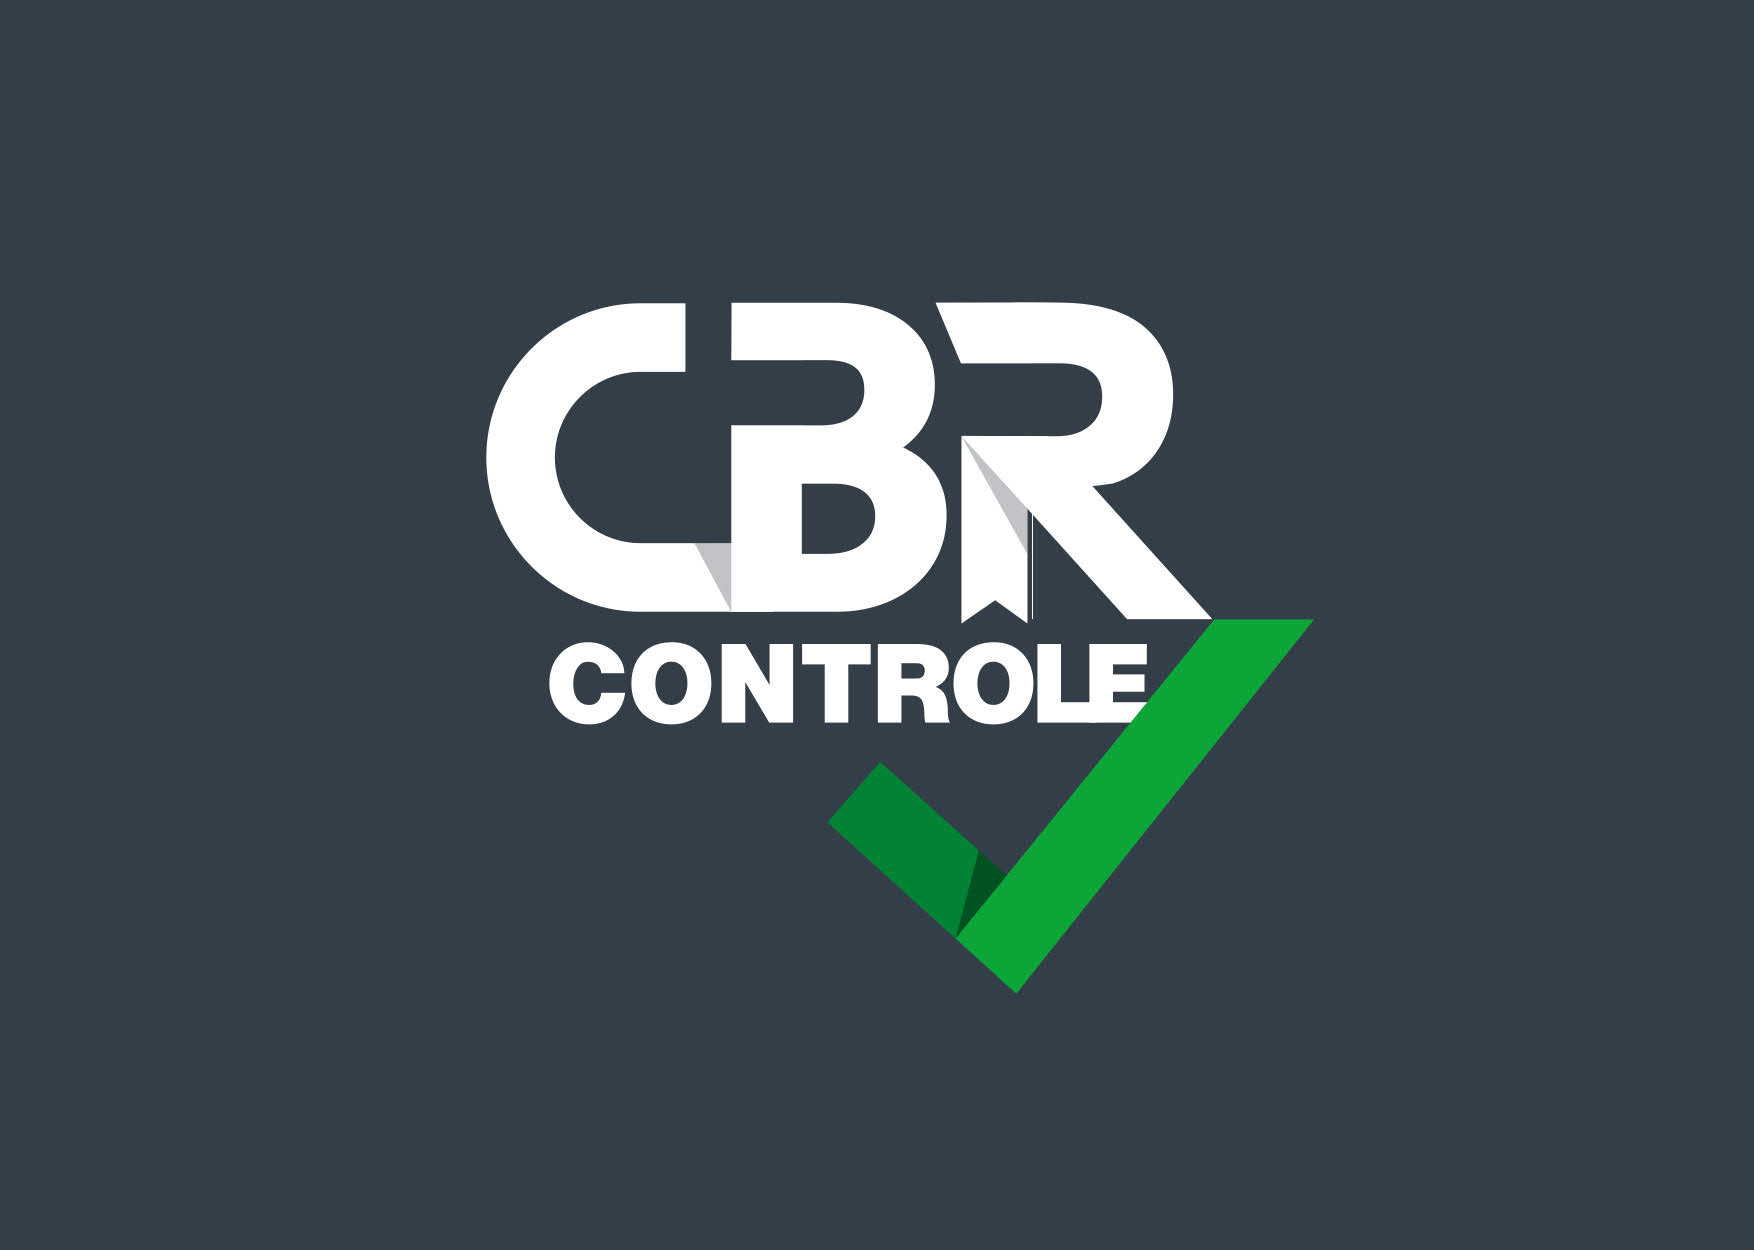 CBR-CONTROLE